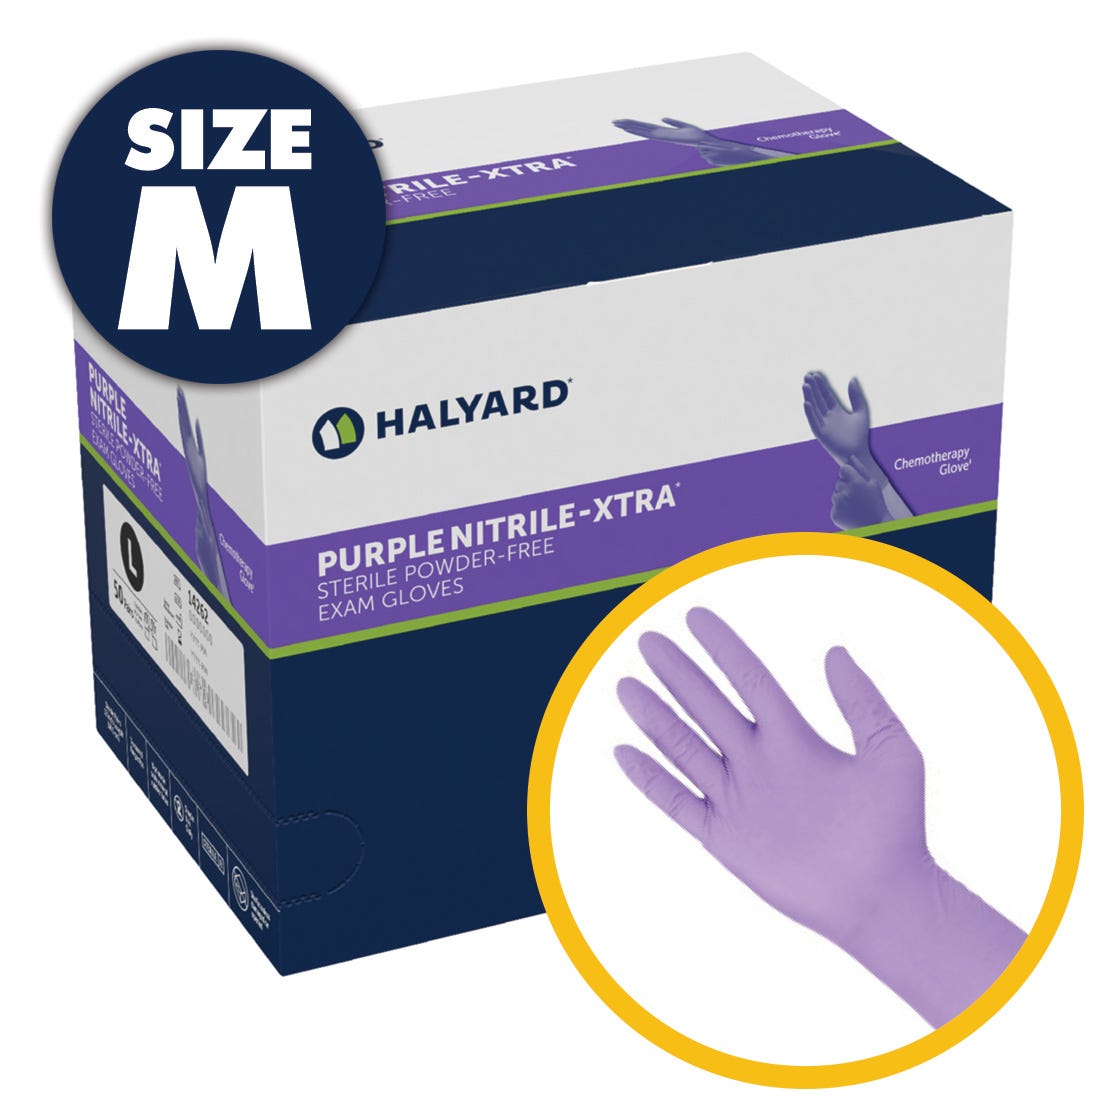 Purple Nitrile-XTRA Sterile Exam Gloves, Medium, Powder Free, Latex Free, 50prs/Box